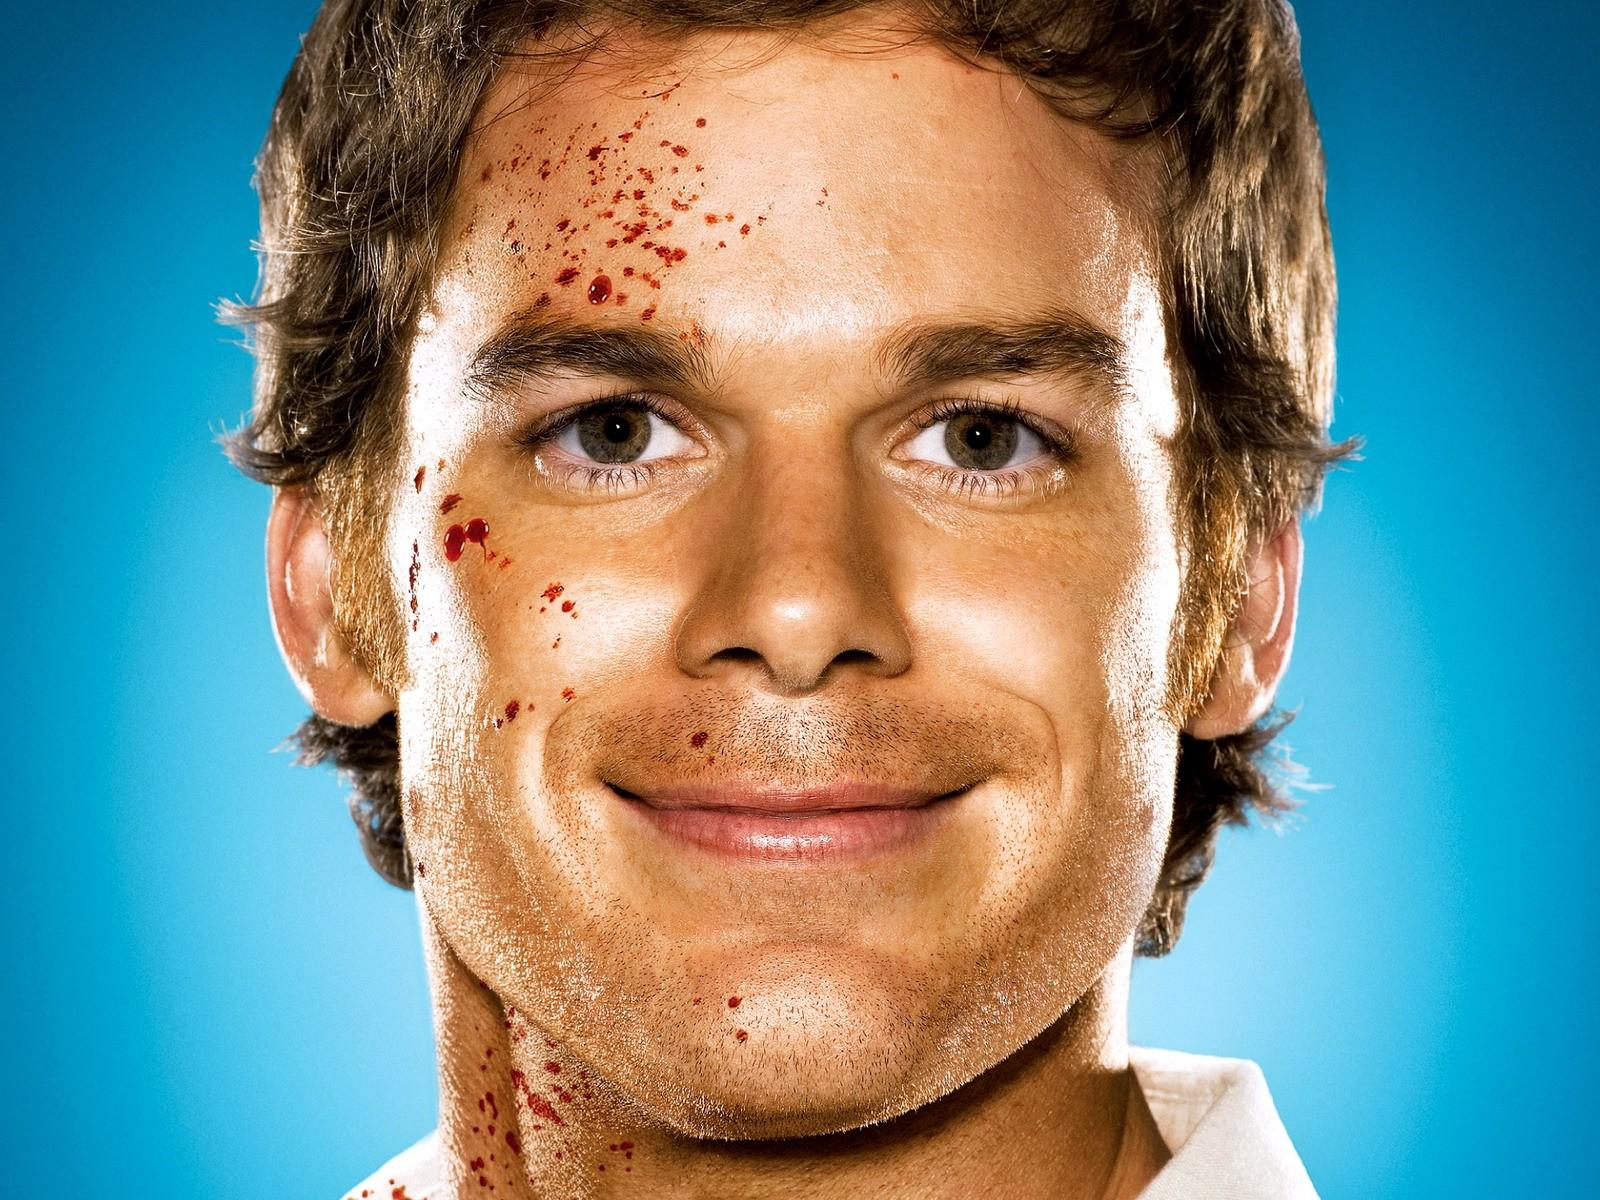 Dexter sur TF1 ce soir ... jeudi 18 février 2010 ... bande annonce